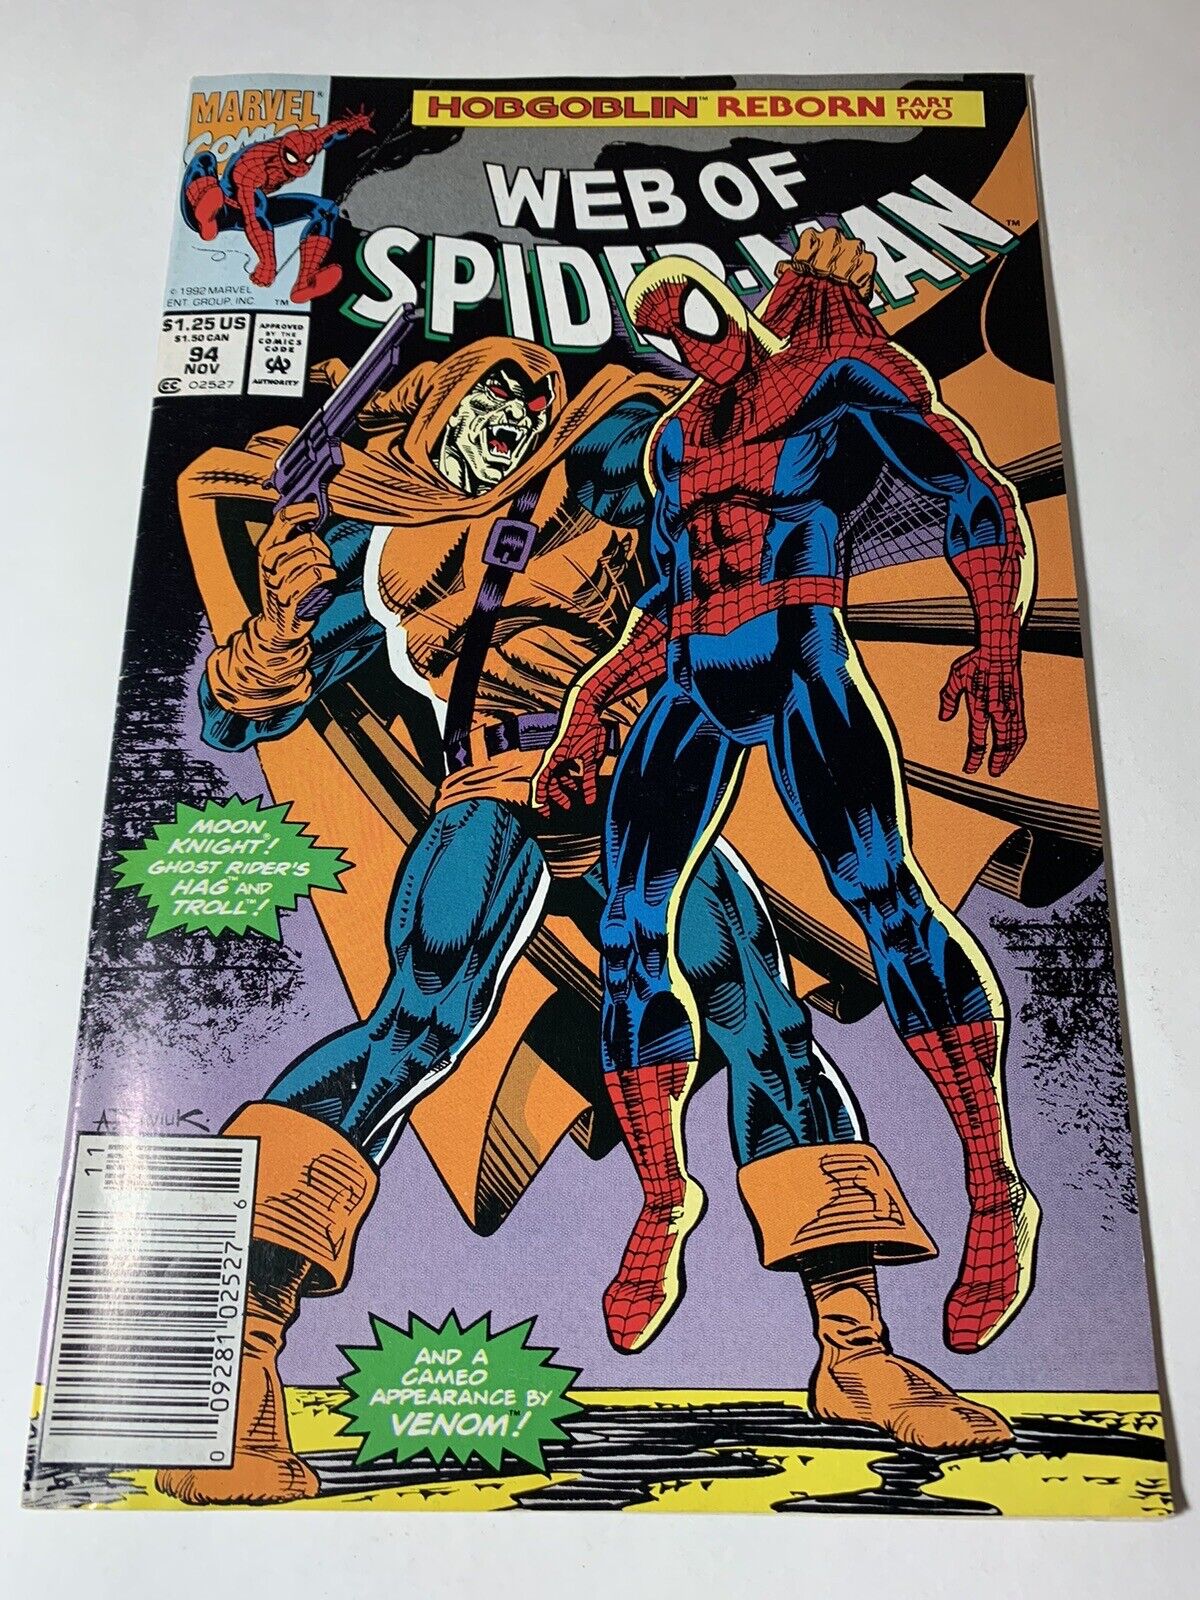 The Web Of Spider-Man Hobgoblin Reborn PT. 2 (Marvel) 1994 Back Issue Comic